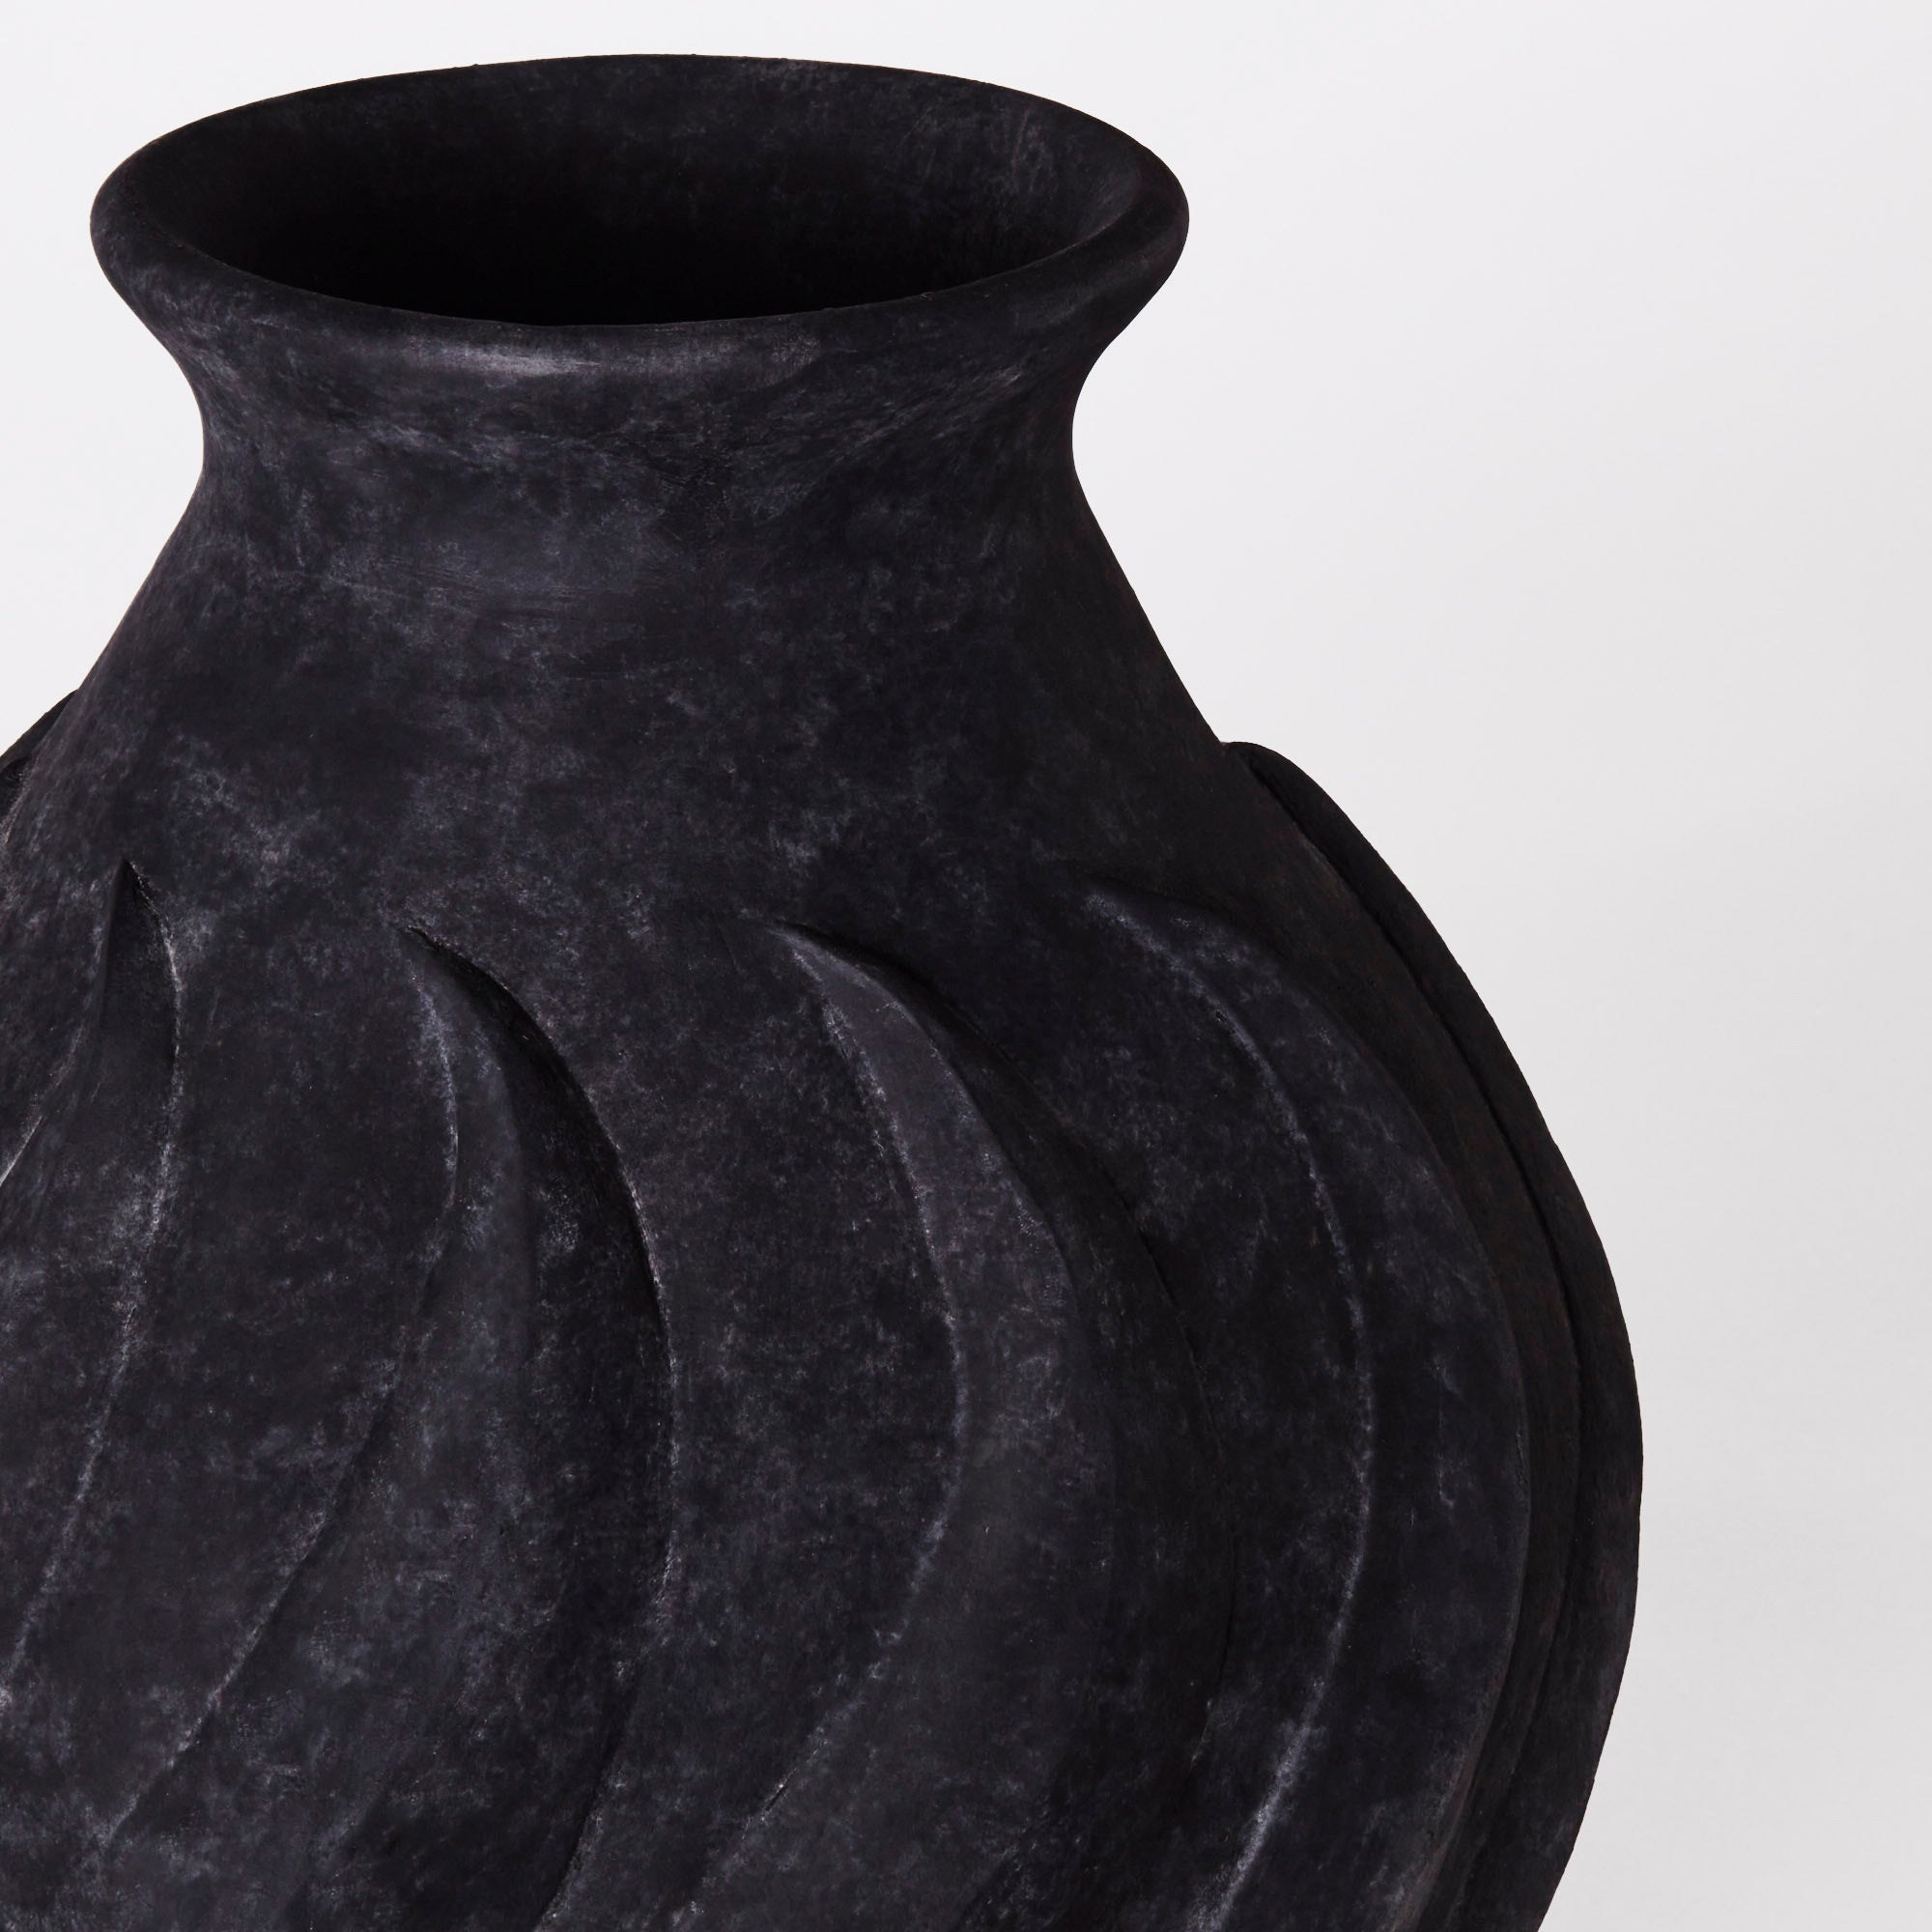 Swirl Vase Black Large